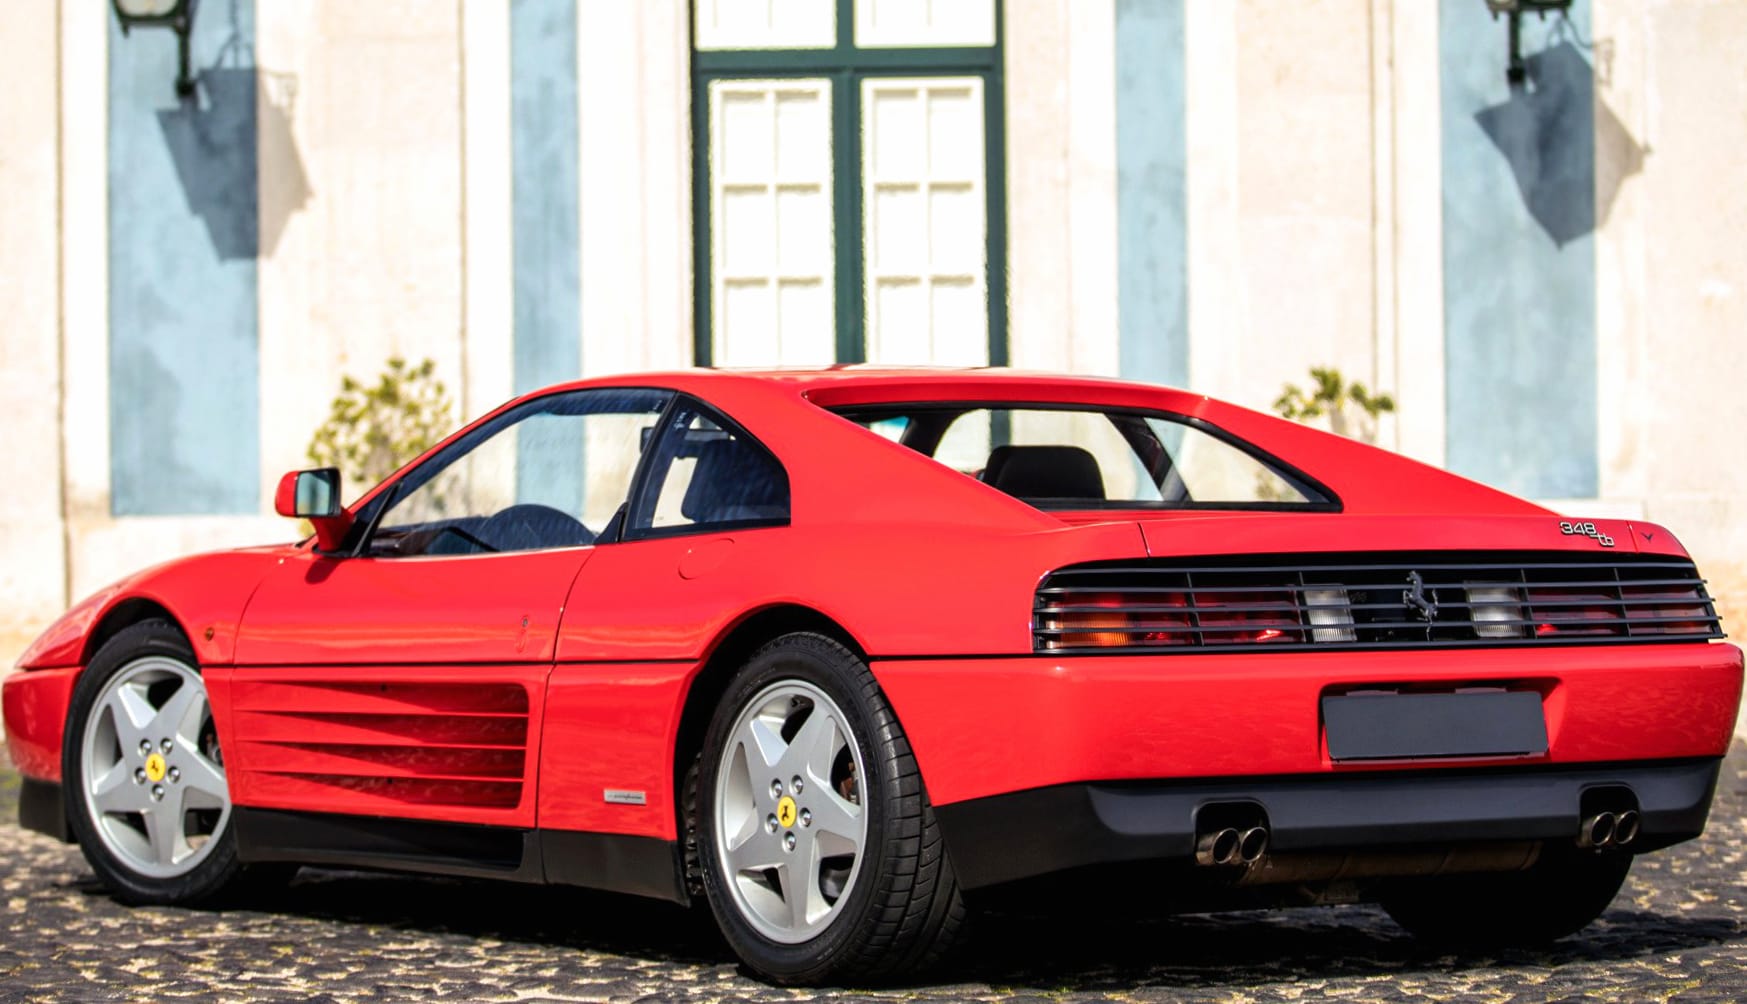 Ferrari 348 TB at 1024 x 768 size wallpapers HD quality